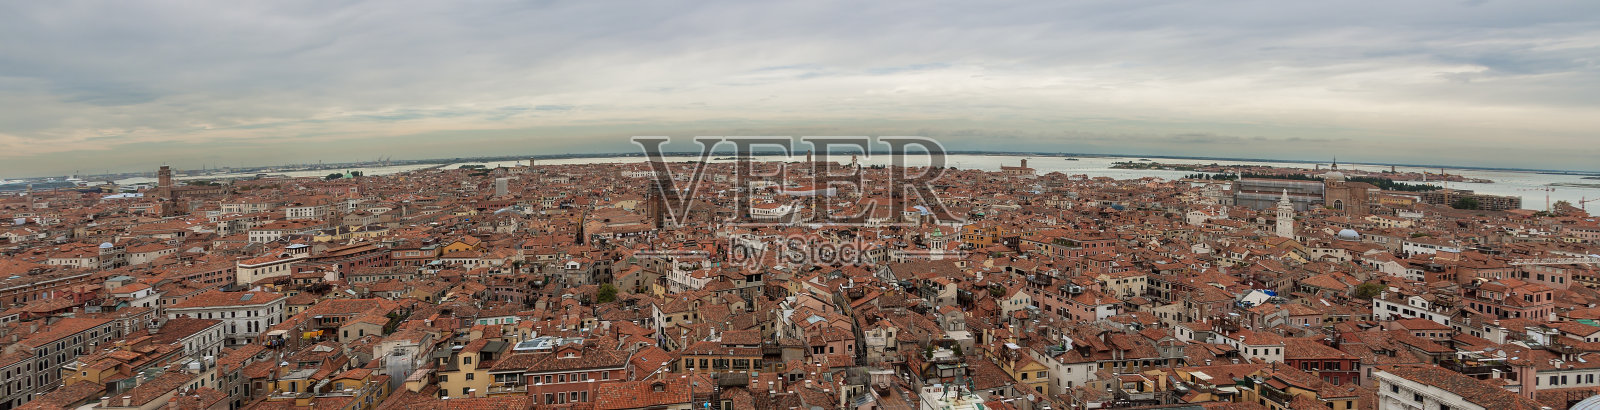 威尼斯全景和鸟瞰照片摄影图片